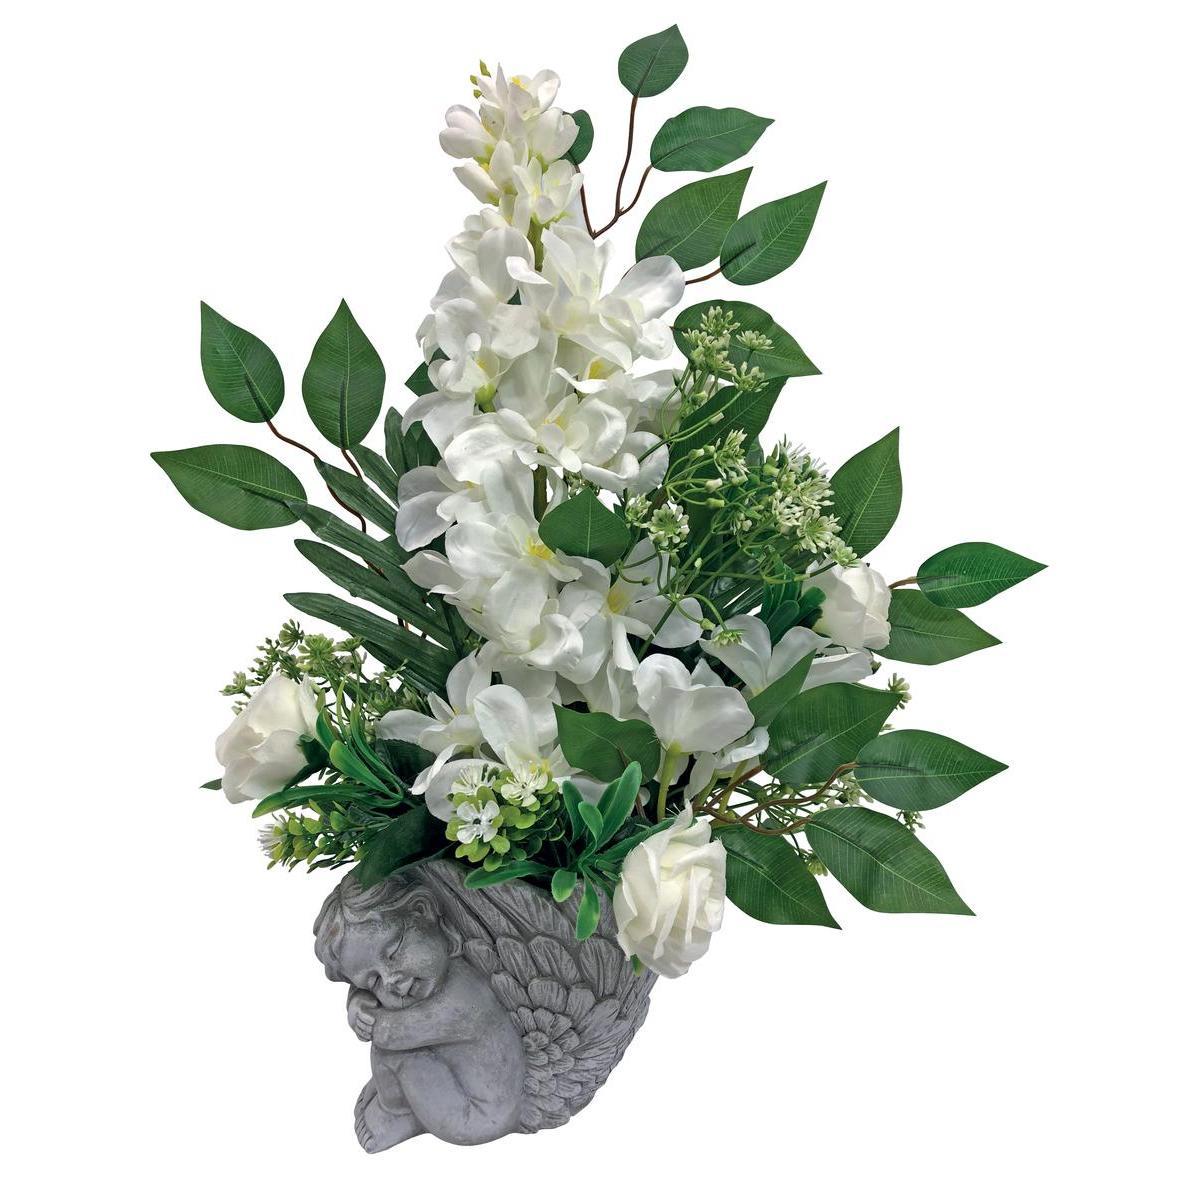 Pot angelot composition de delphiniums et roses synthétiques - H 43 cm - Différents coloris - Violet, vert, rose, blanc